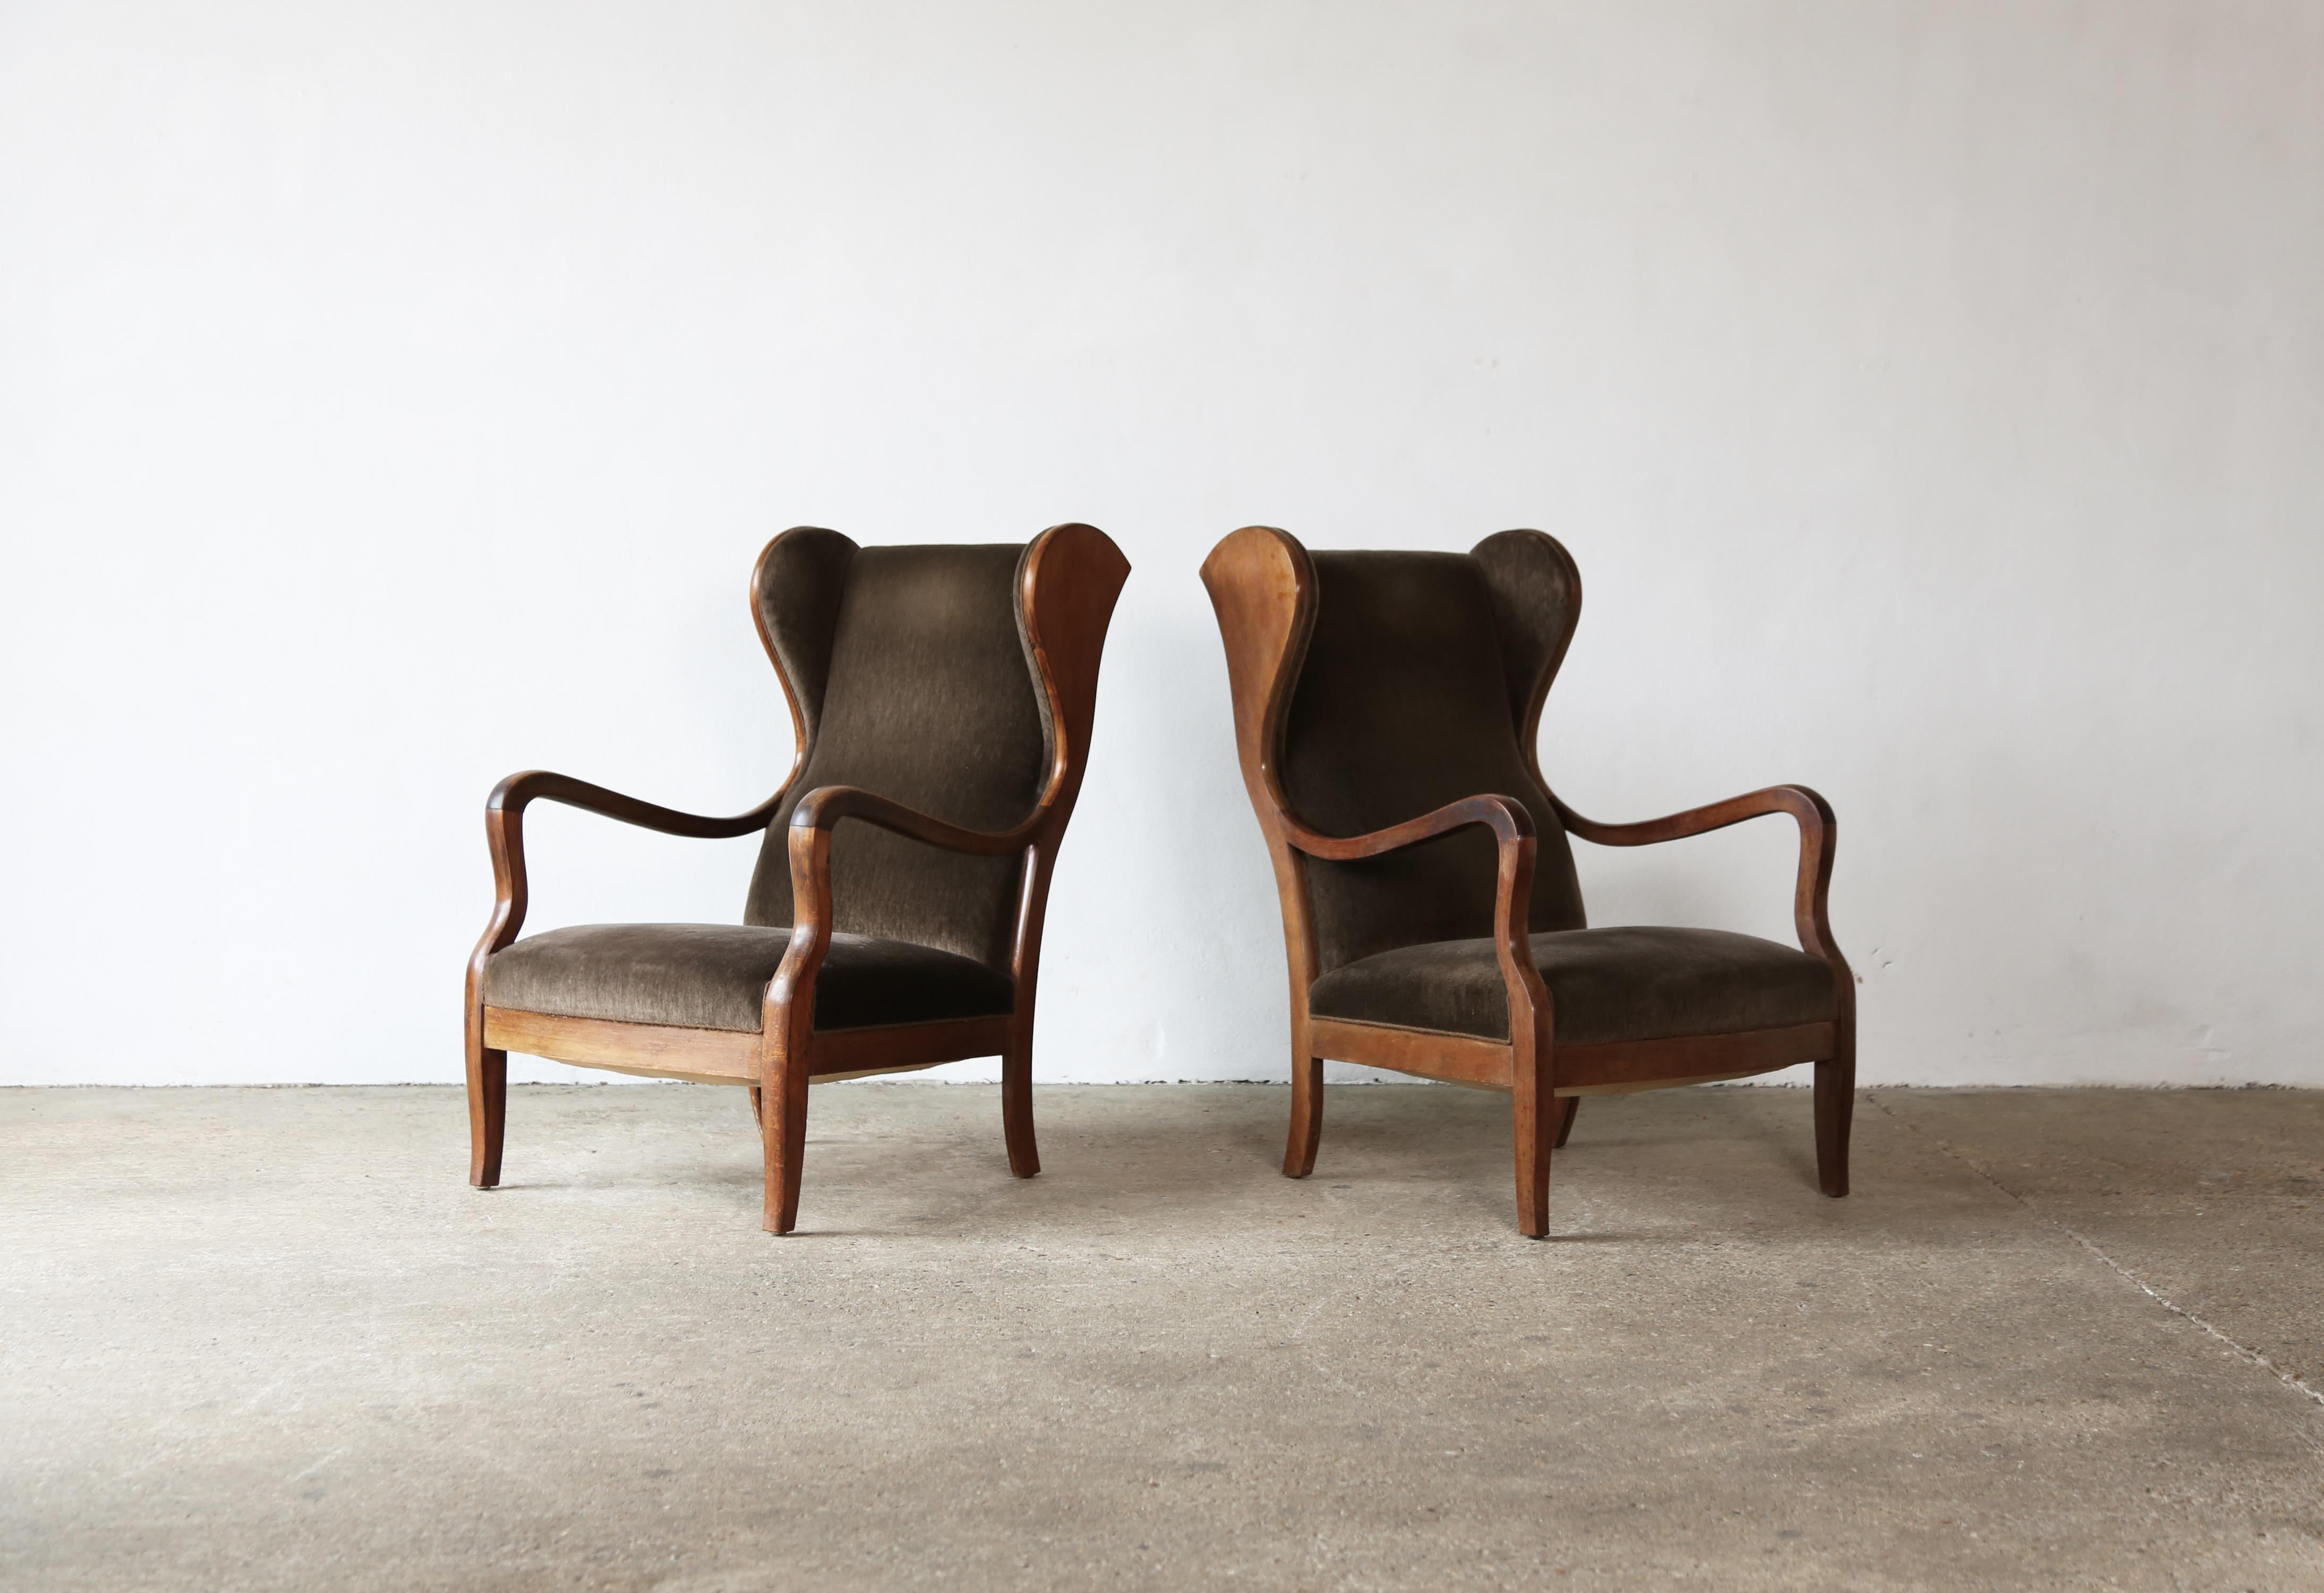 Ein originales Paar Stühle von Frits Henningsen, Dänemark, 1940er Jahre. Entworfen und hergestellt von Frits Henningsen, Kopenhagen. Die Stühle wurden vermutlich irgendwann in ihrer Geschichte neu gepolstert, können aber auf Wunsch leicht mit einem